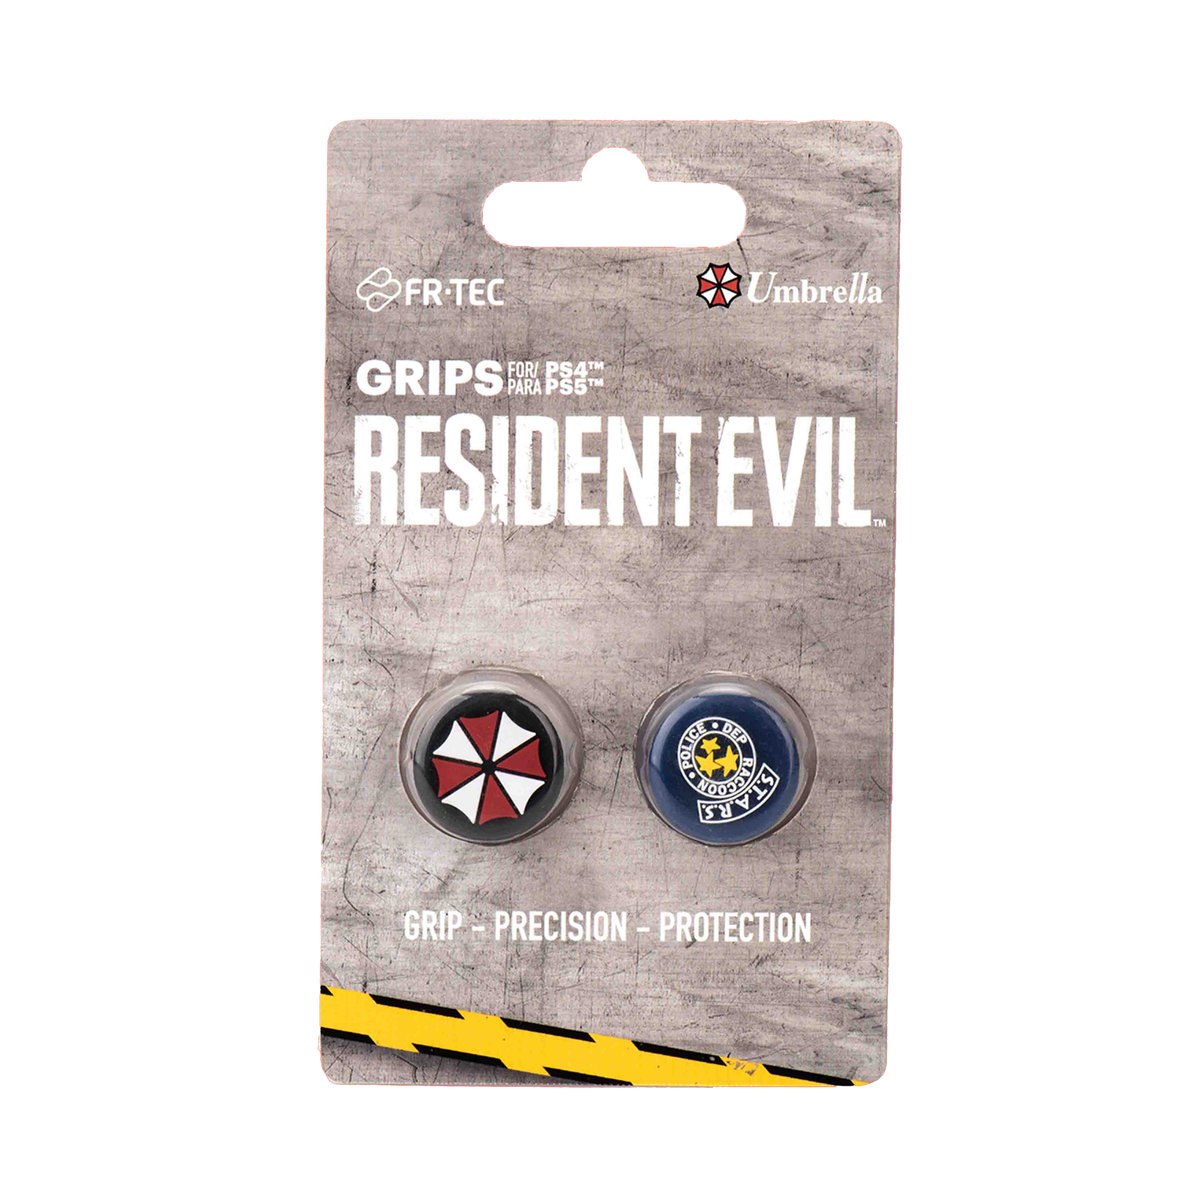 Zdjęcia - Akcesorium do konsoli Uchwyty Na Kciuk - Wyzwalacze Strzelanki Do Gier Resident Evil Official Li